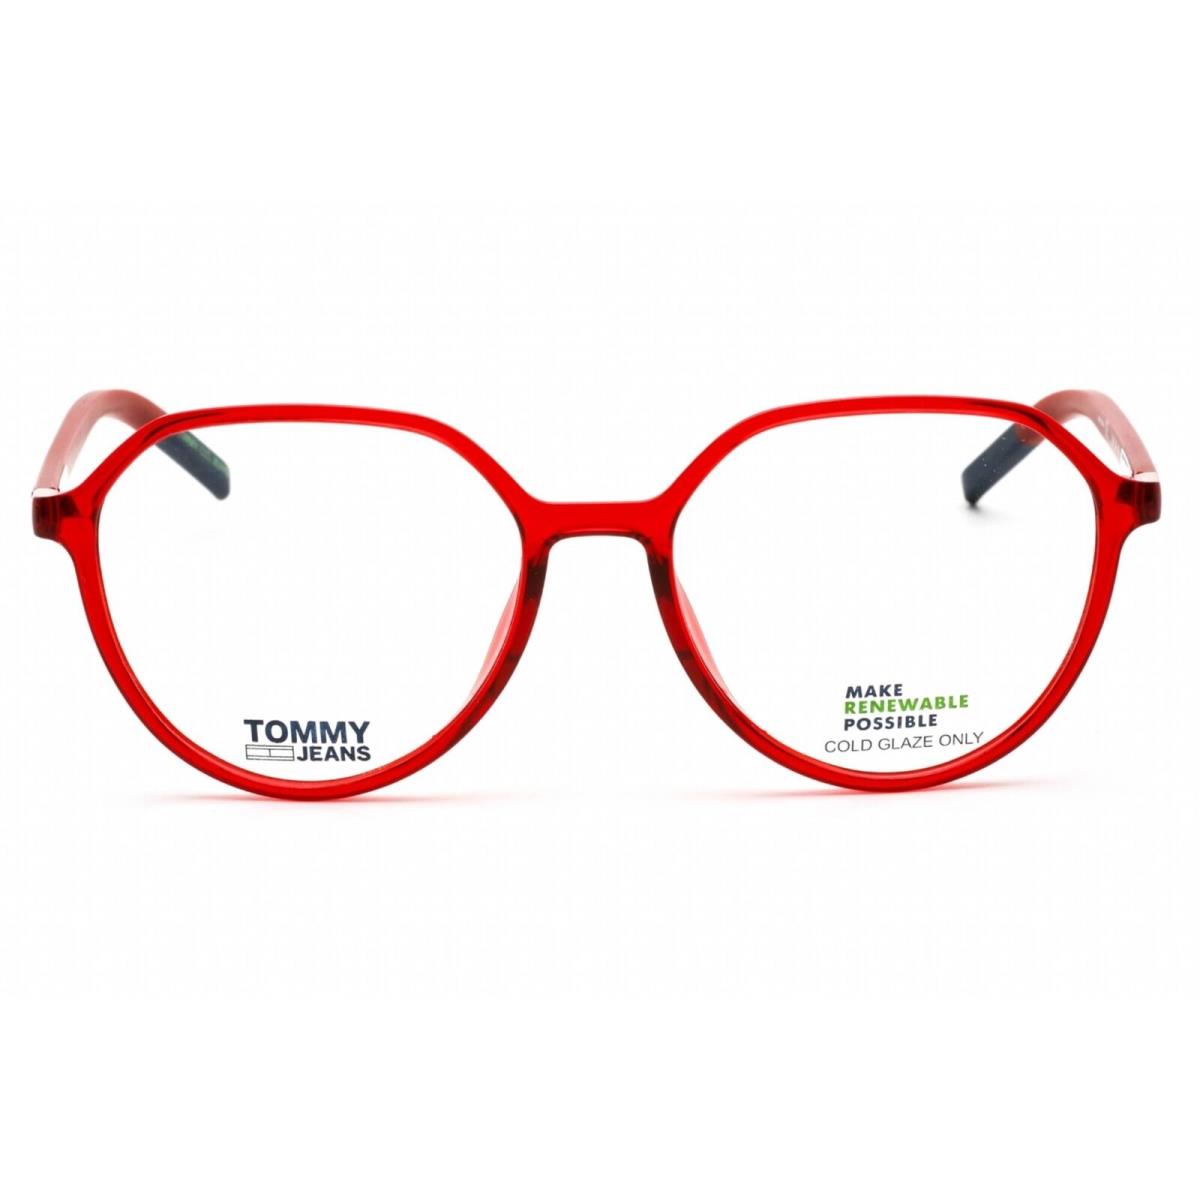 Tommy Hilfiger Women`s Eyeglasses Red Plastic Oval Shape Frame TJ 0011 0C9A 00